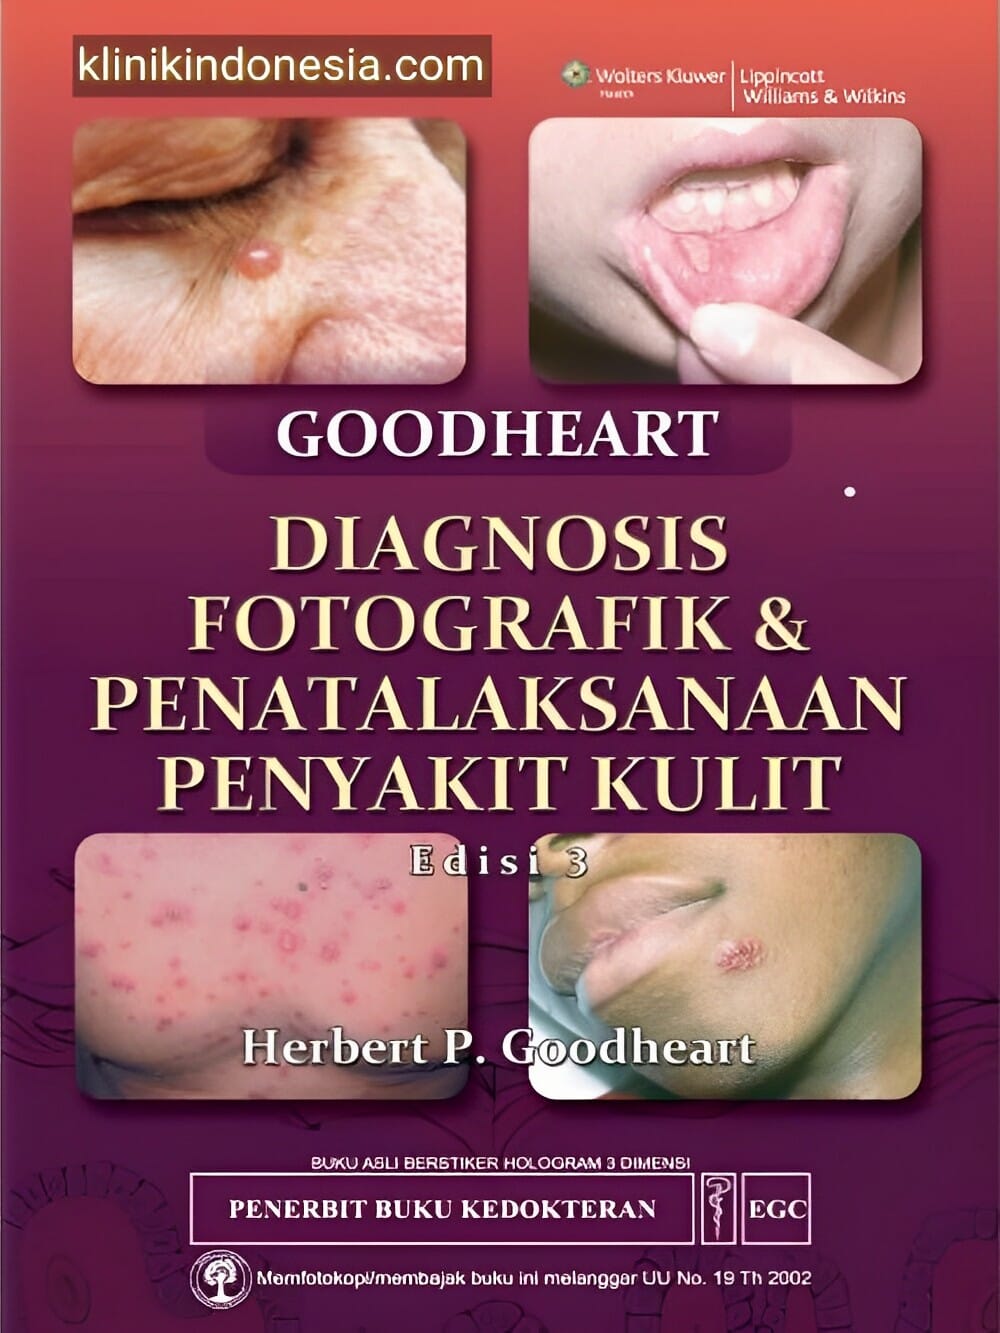 Gambar Diagnosis Fotografik & Penatalaksanaan Penyakit Kulit